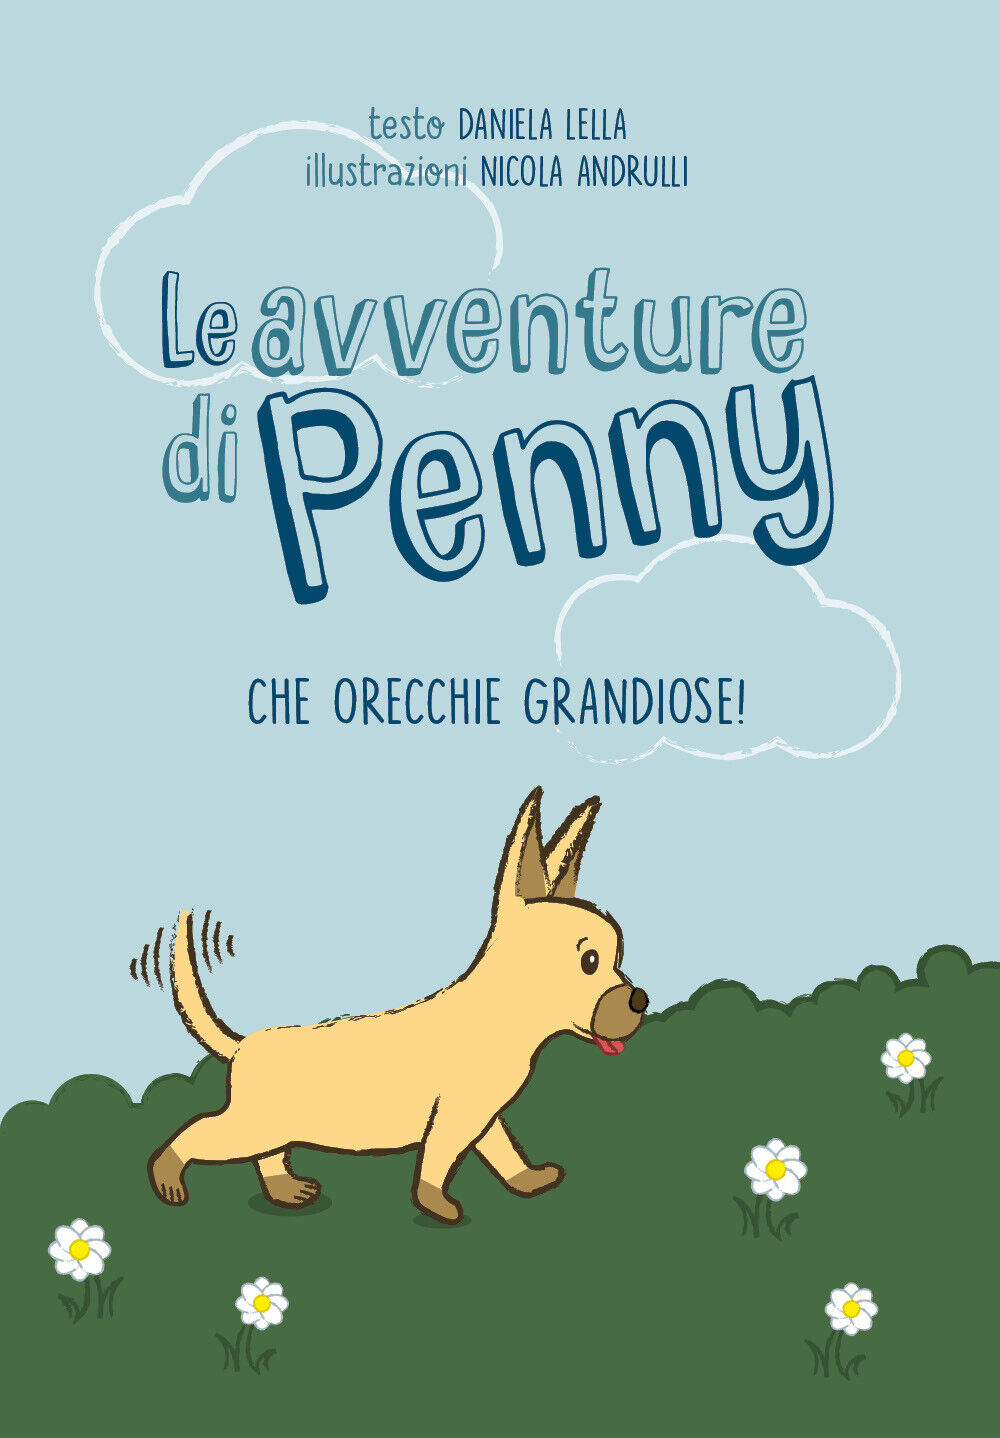  Le avventure di Penny - Che orecchie grandiose! - Daniela Lella,  2019